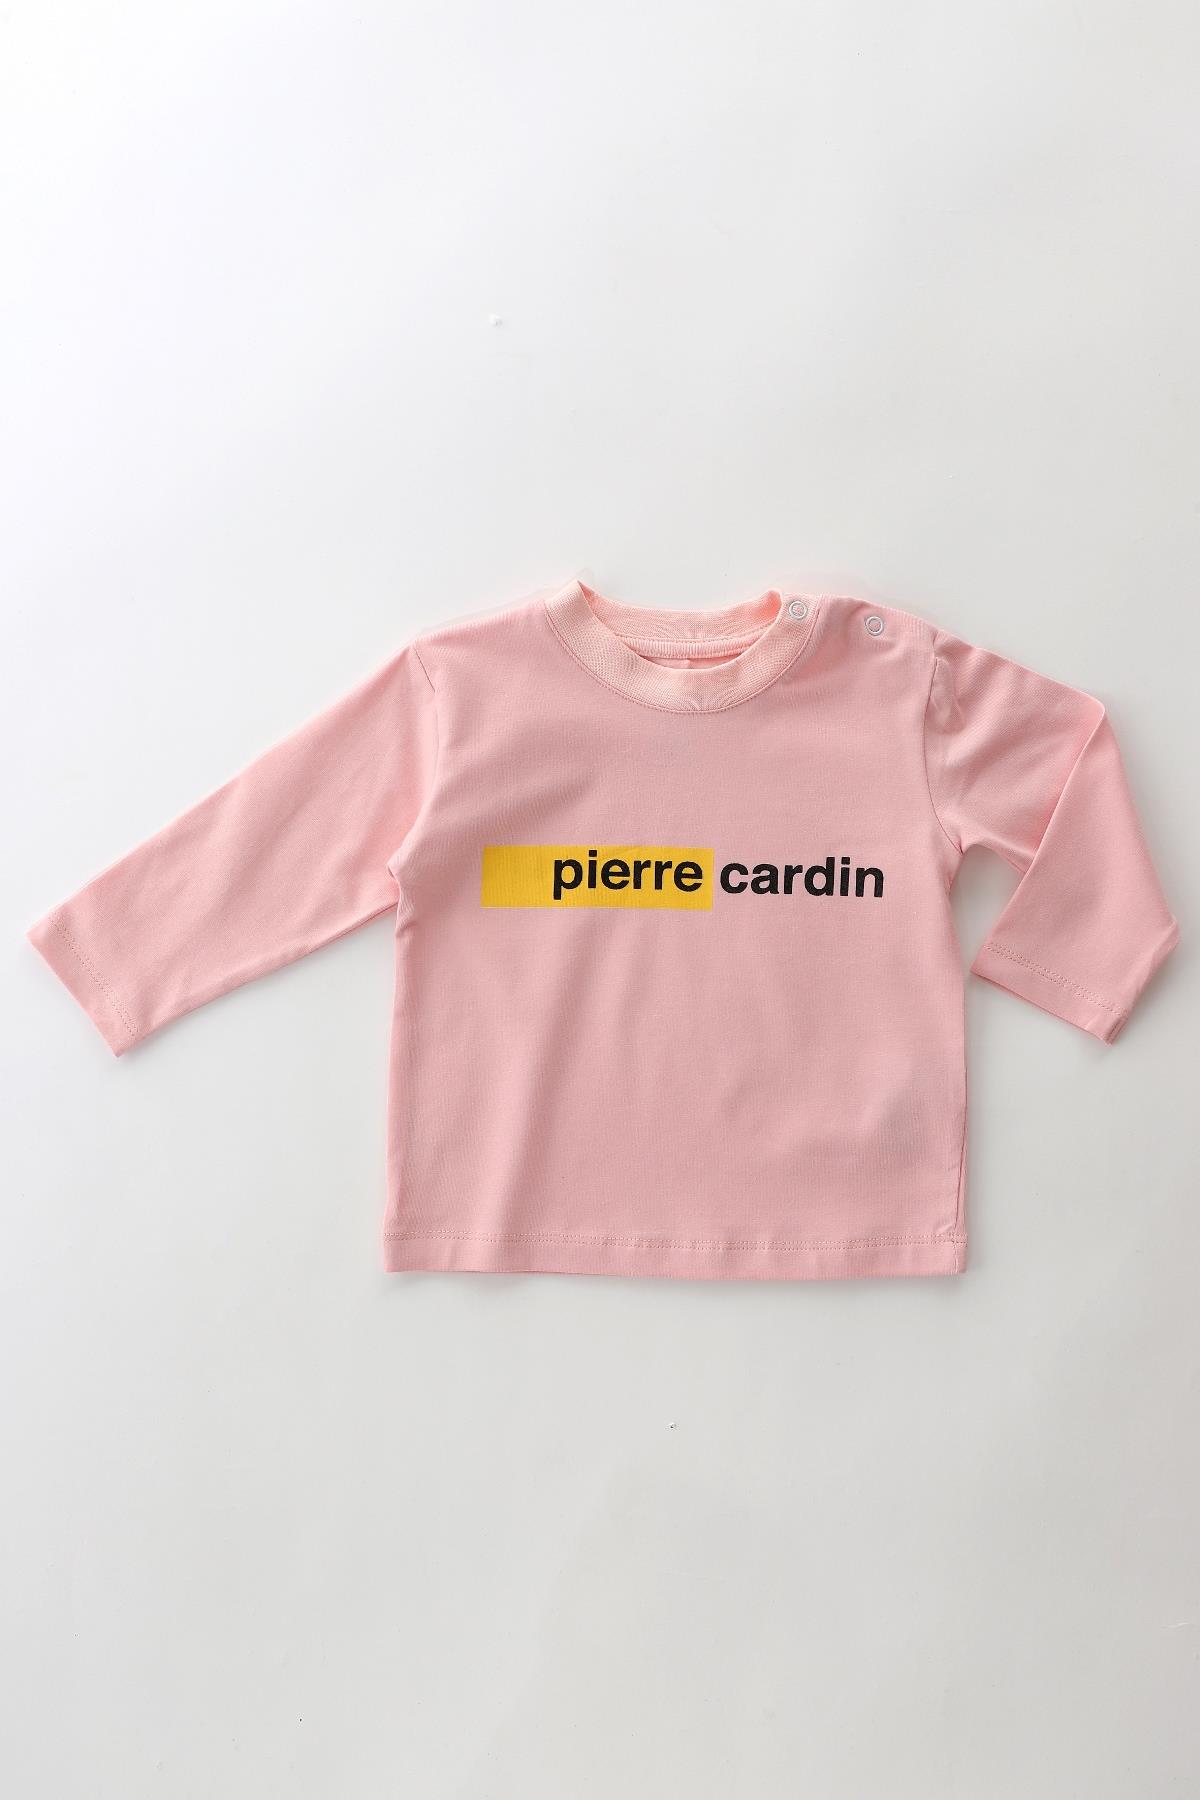 Pierre Cardin Pierre Cardin %100 Pamuk Bebek Uzun Kol Sweatshirt Tişört 303310